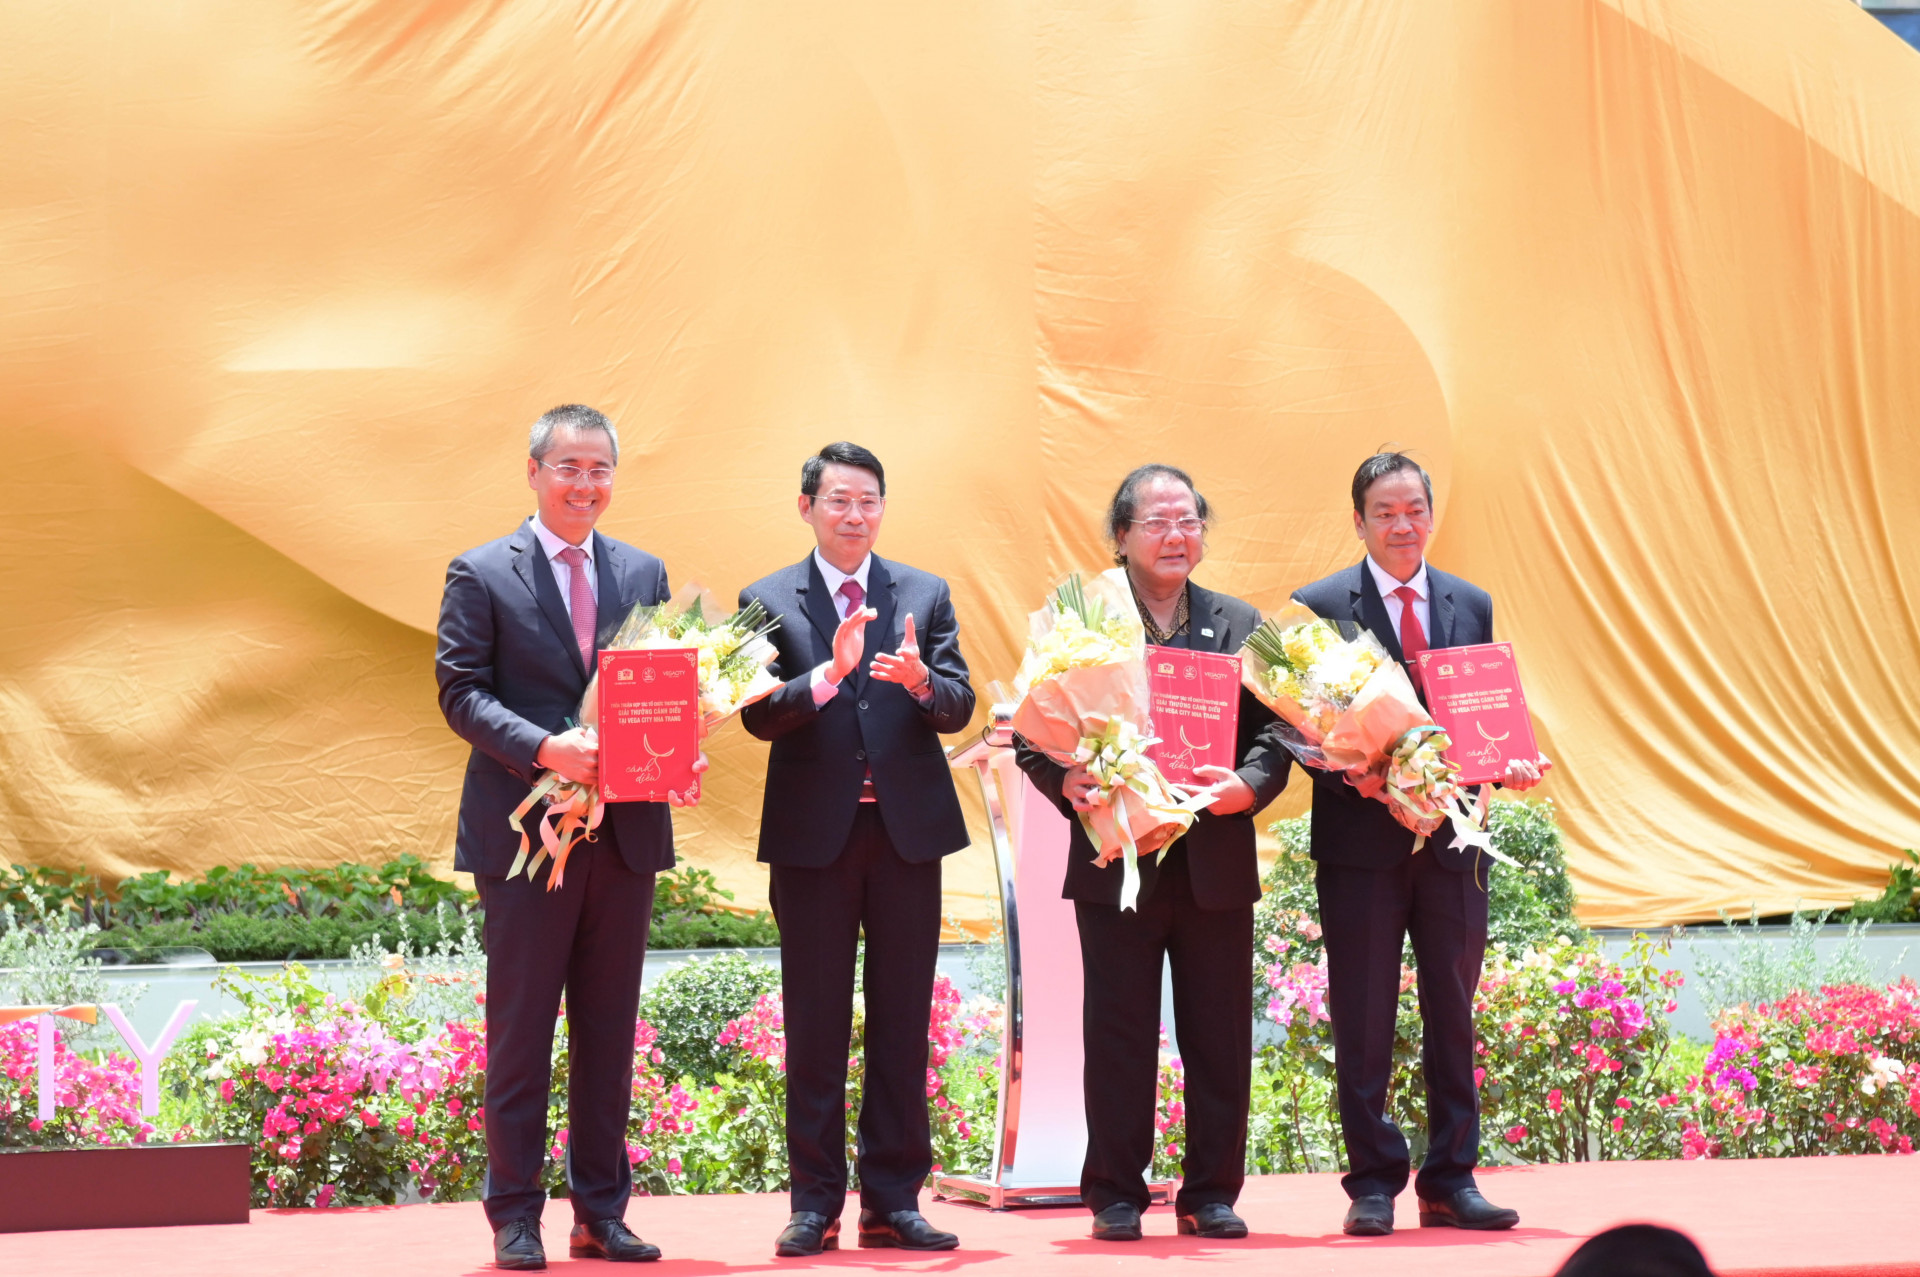 Lễ công bố thoả thuận hợp tác phối hợp tổ chức thường niên giải thưởng Cánh diều tại Nha Trang giữa tỉnh Khánh Hoà – Hội điện ảnh Việt Nam – Công ty Cổ phần Vega City (thuộc Tập đoàn KDI Holdings)